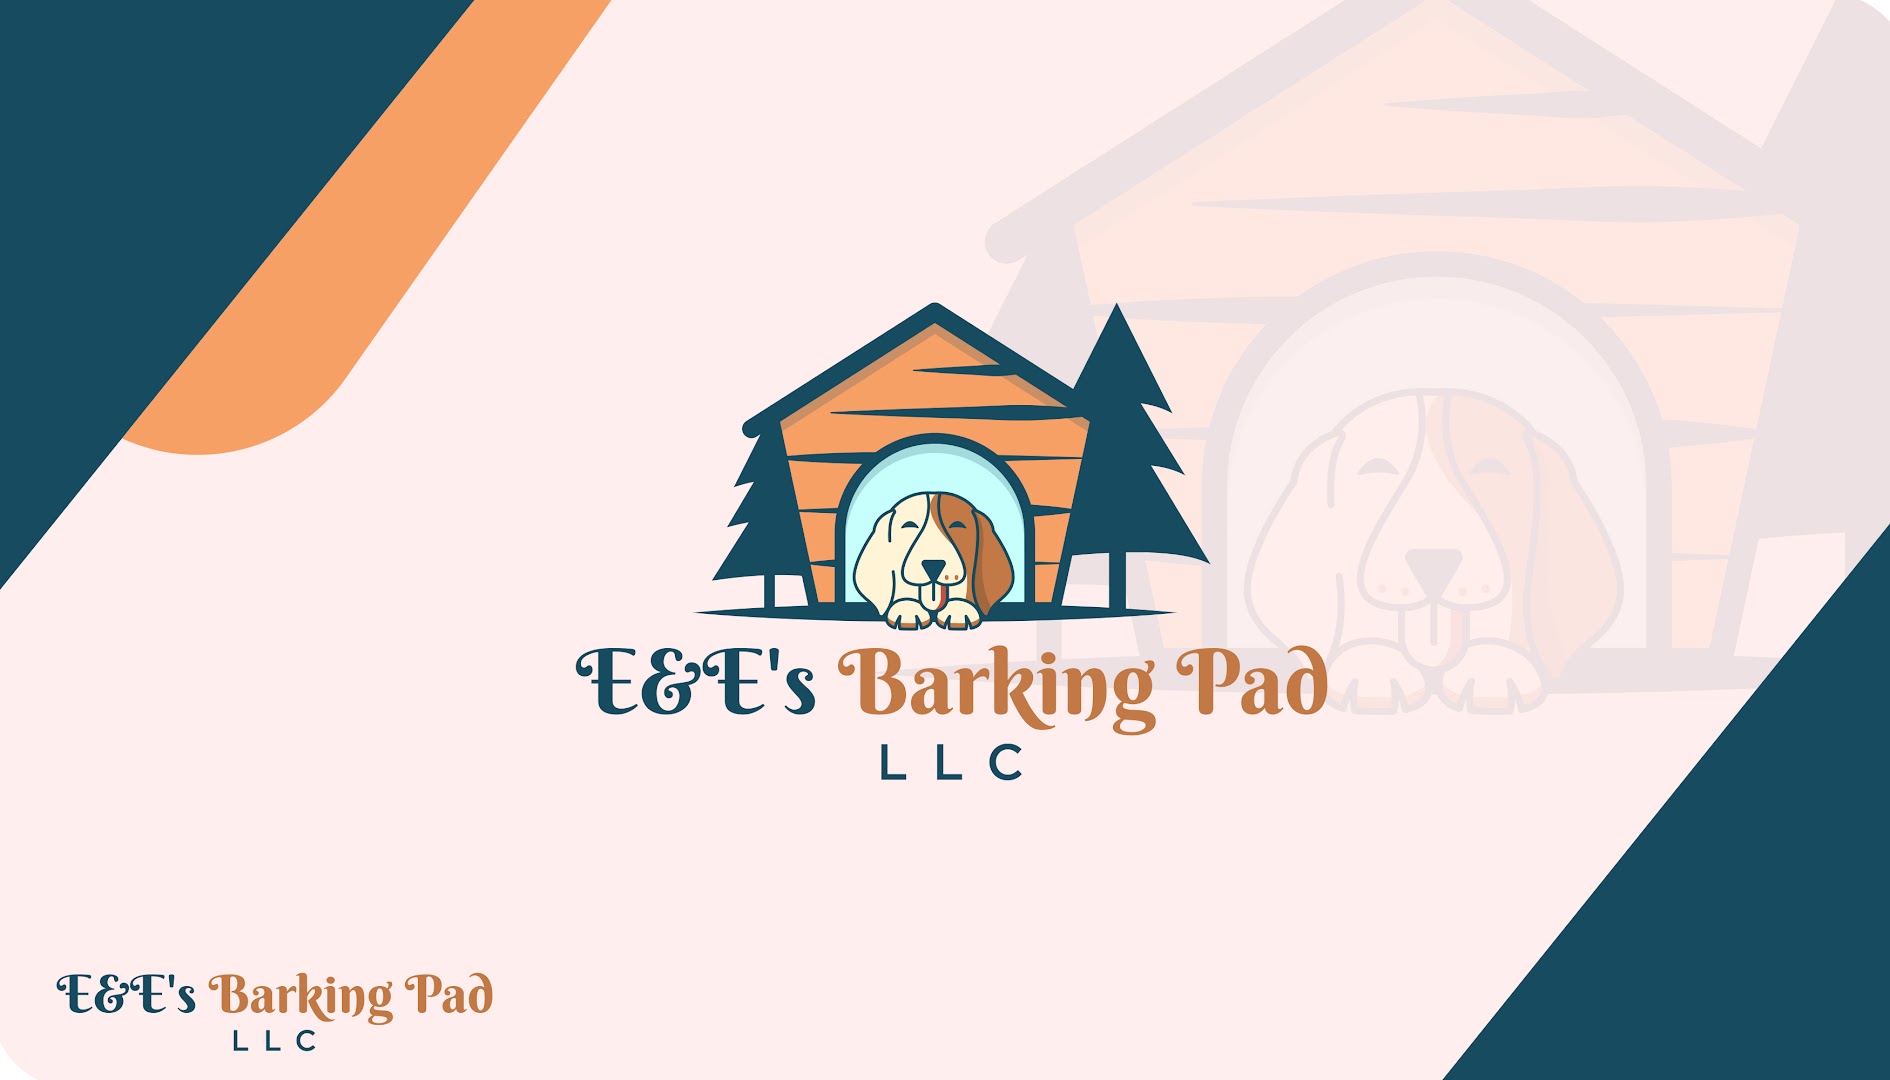 E&E's Barking Pad